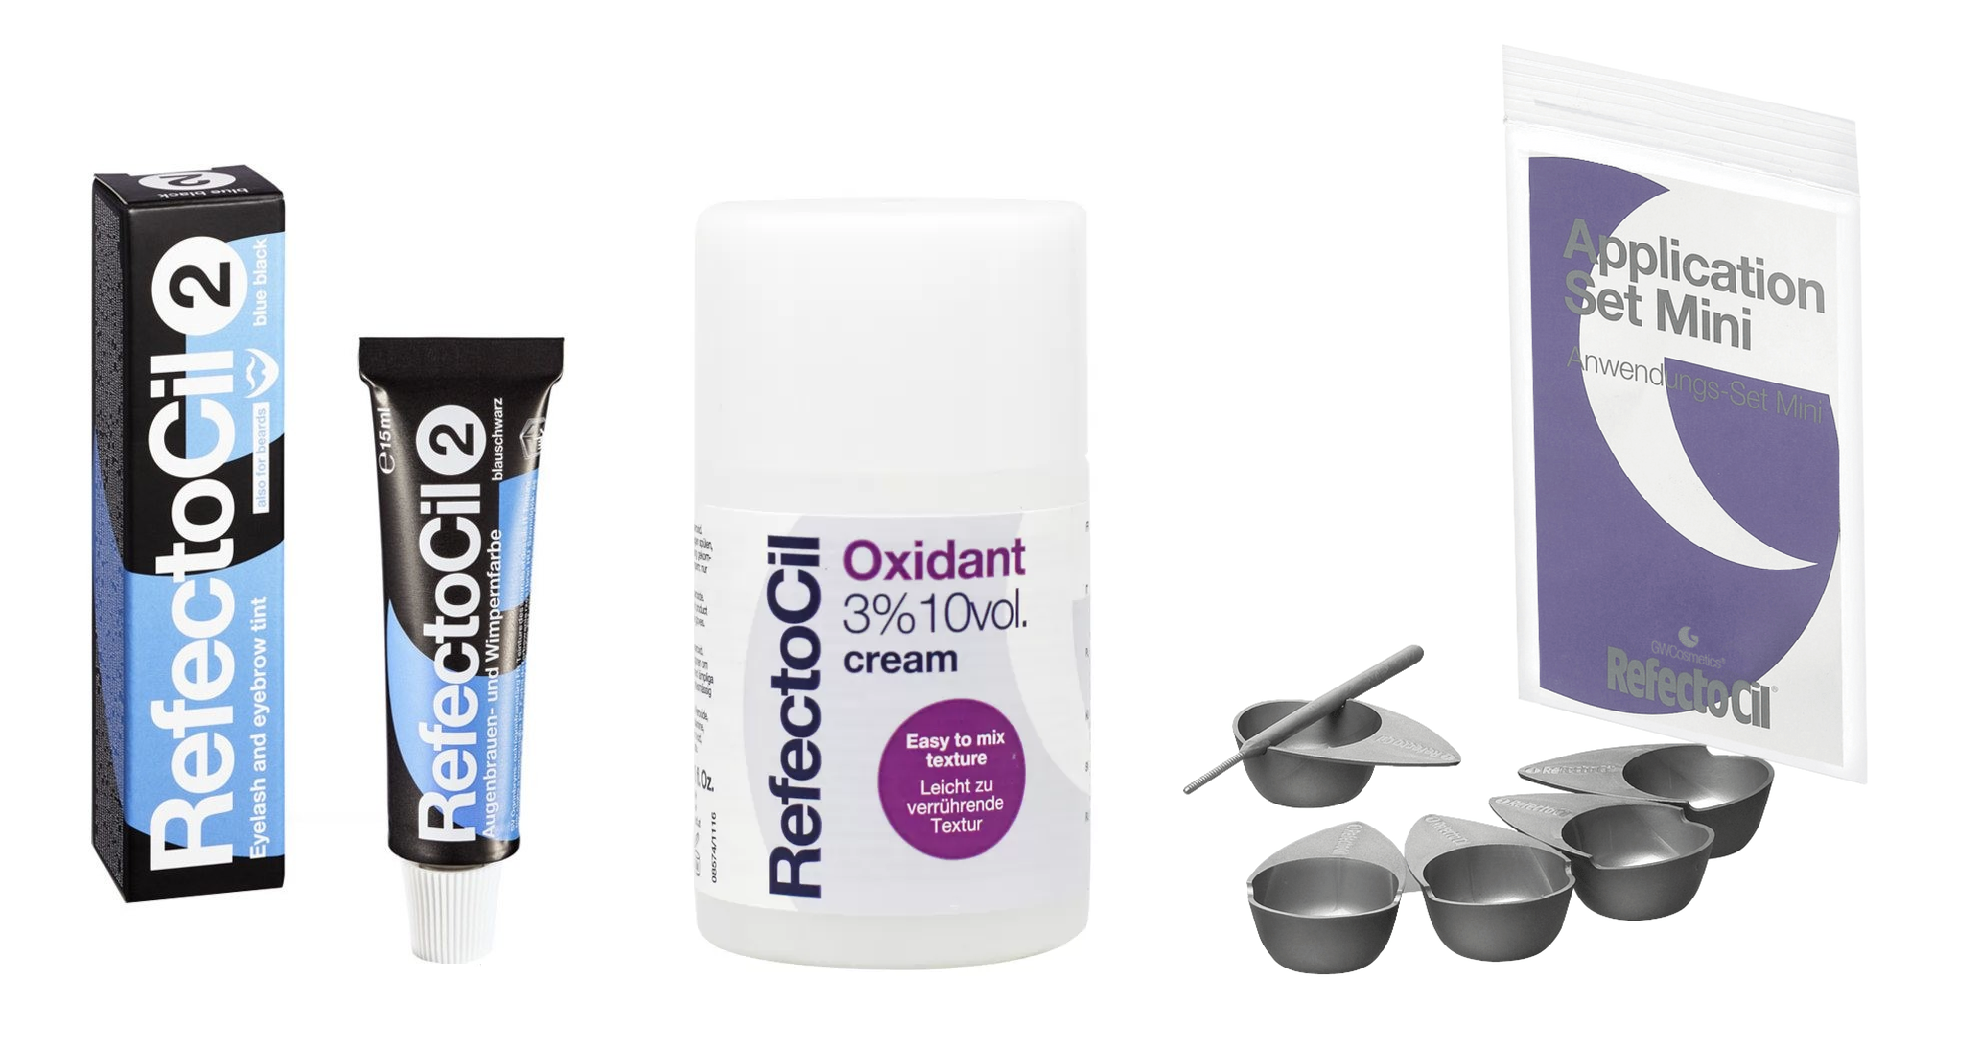 4: RefectoCil - Eyelash and Eyebrow Color Blue Black 2 + RefectoCil - Oxidant cream 3%, 100 ml + RefectoCil - Application Set Mini